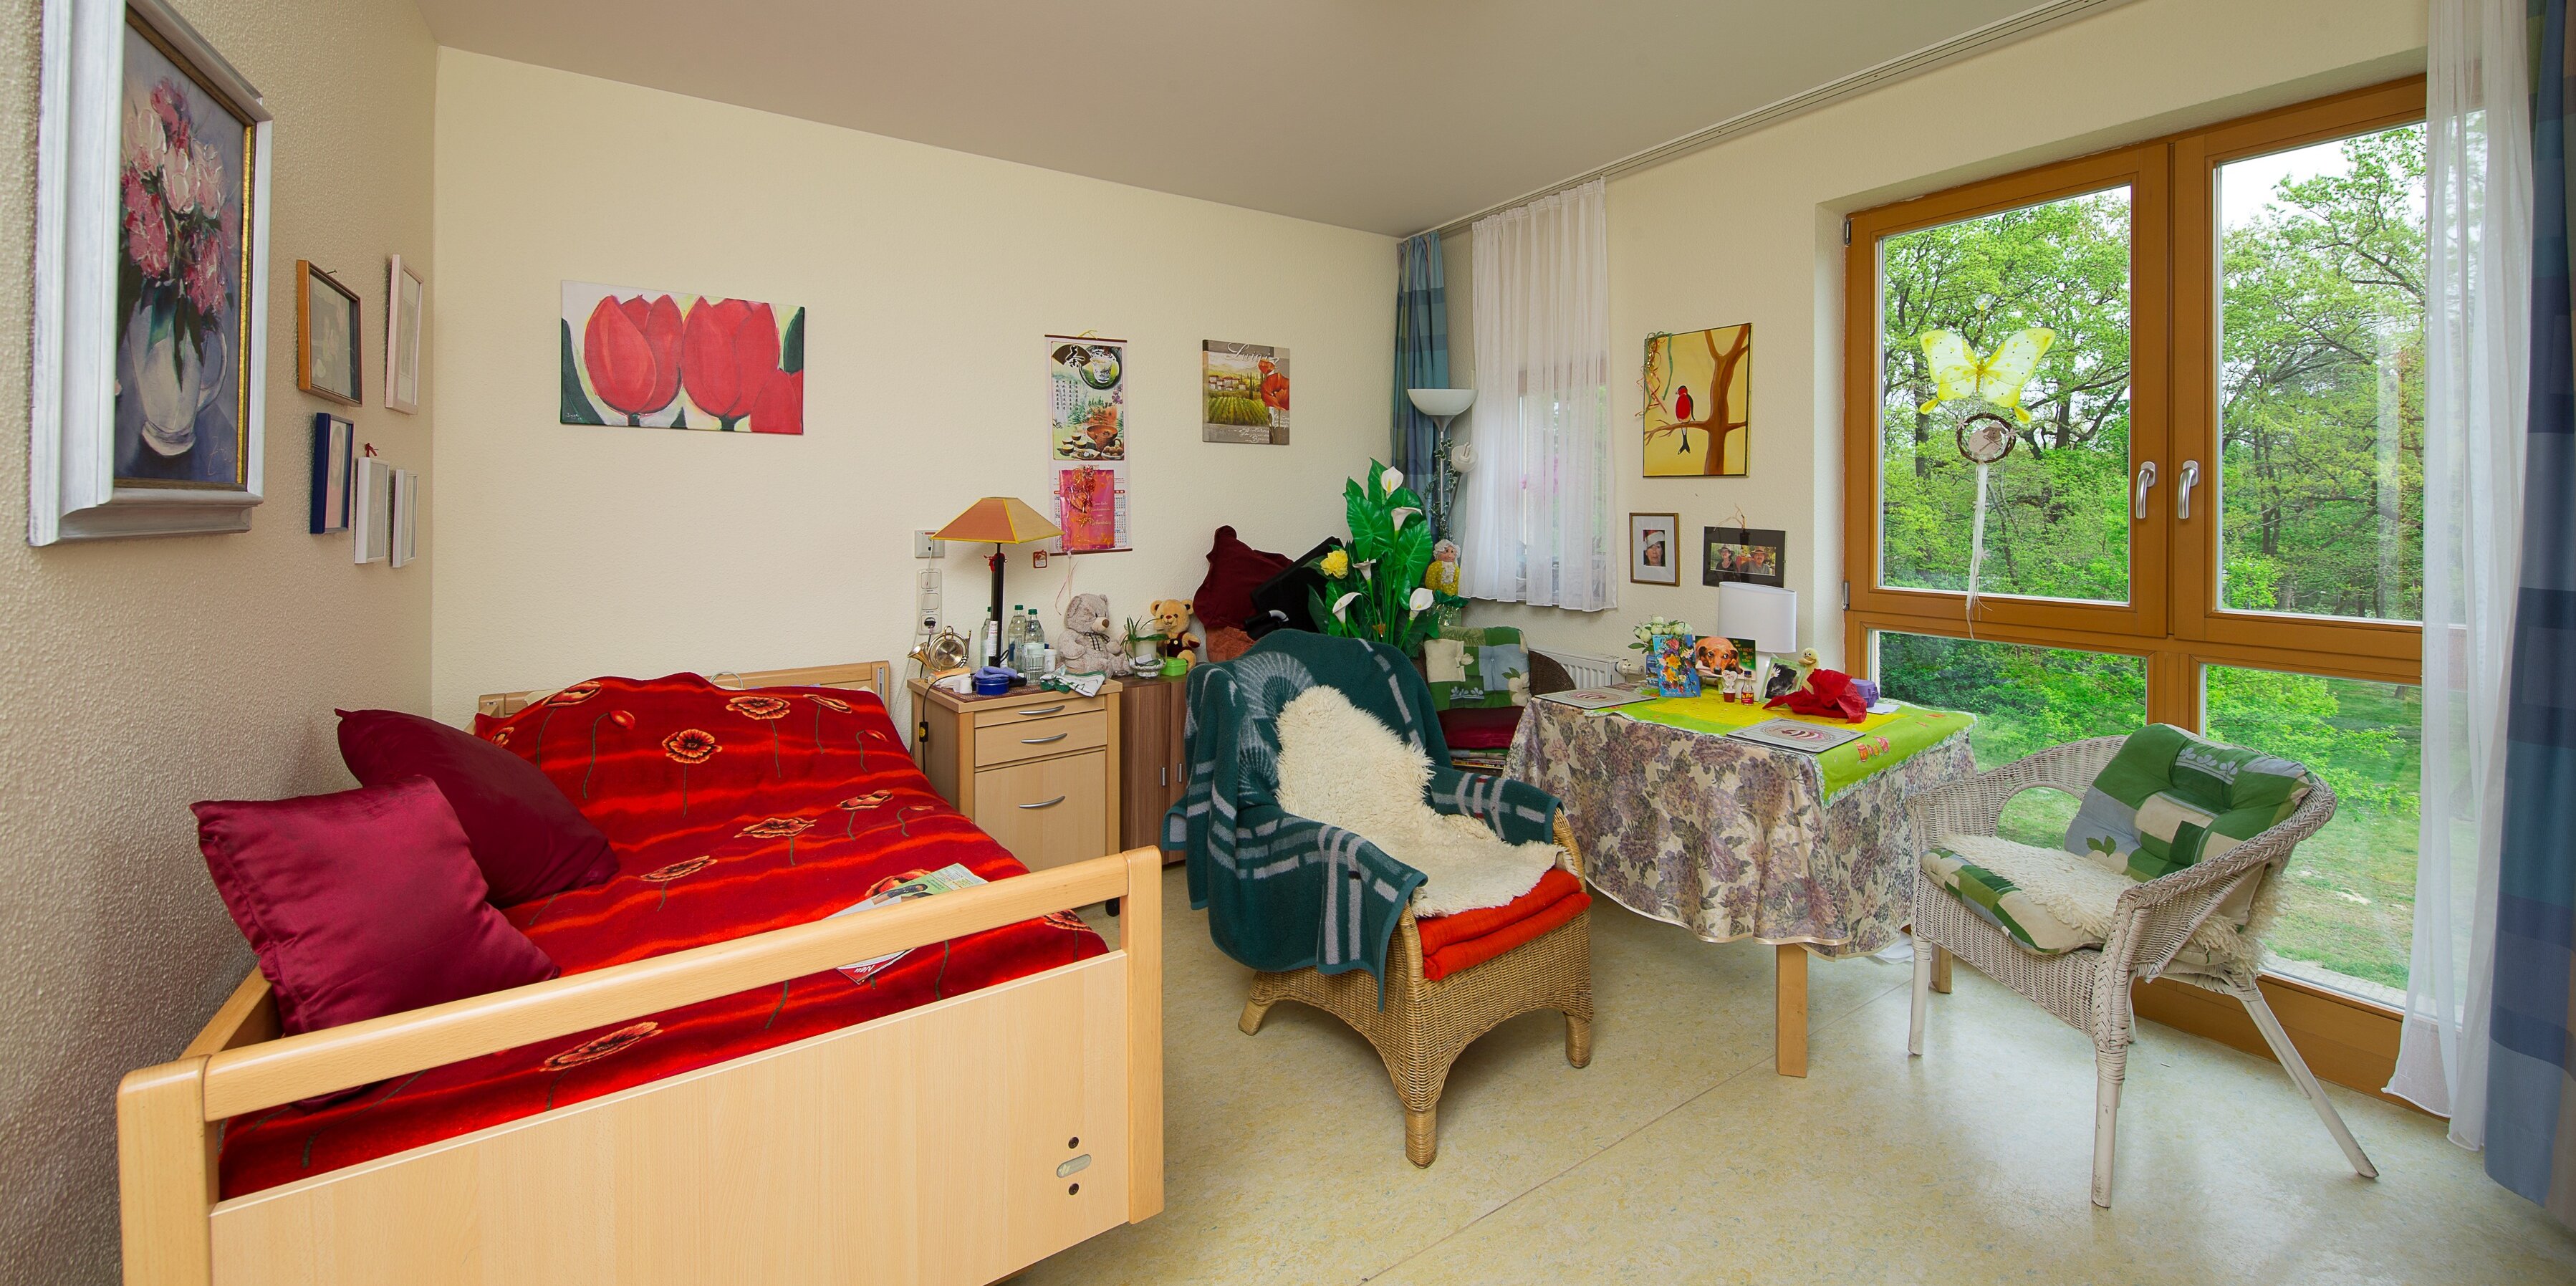 Beispielansicht eines Bewohnerzimmers im Haus 1 inklusive Ausstattung sowie persönlicher Wand- und Zimmerdekoration eines Bewohners